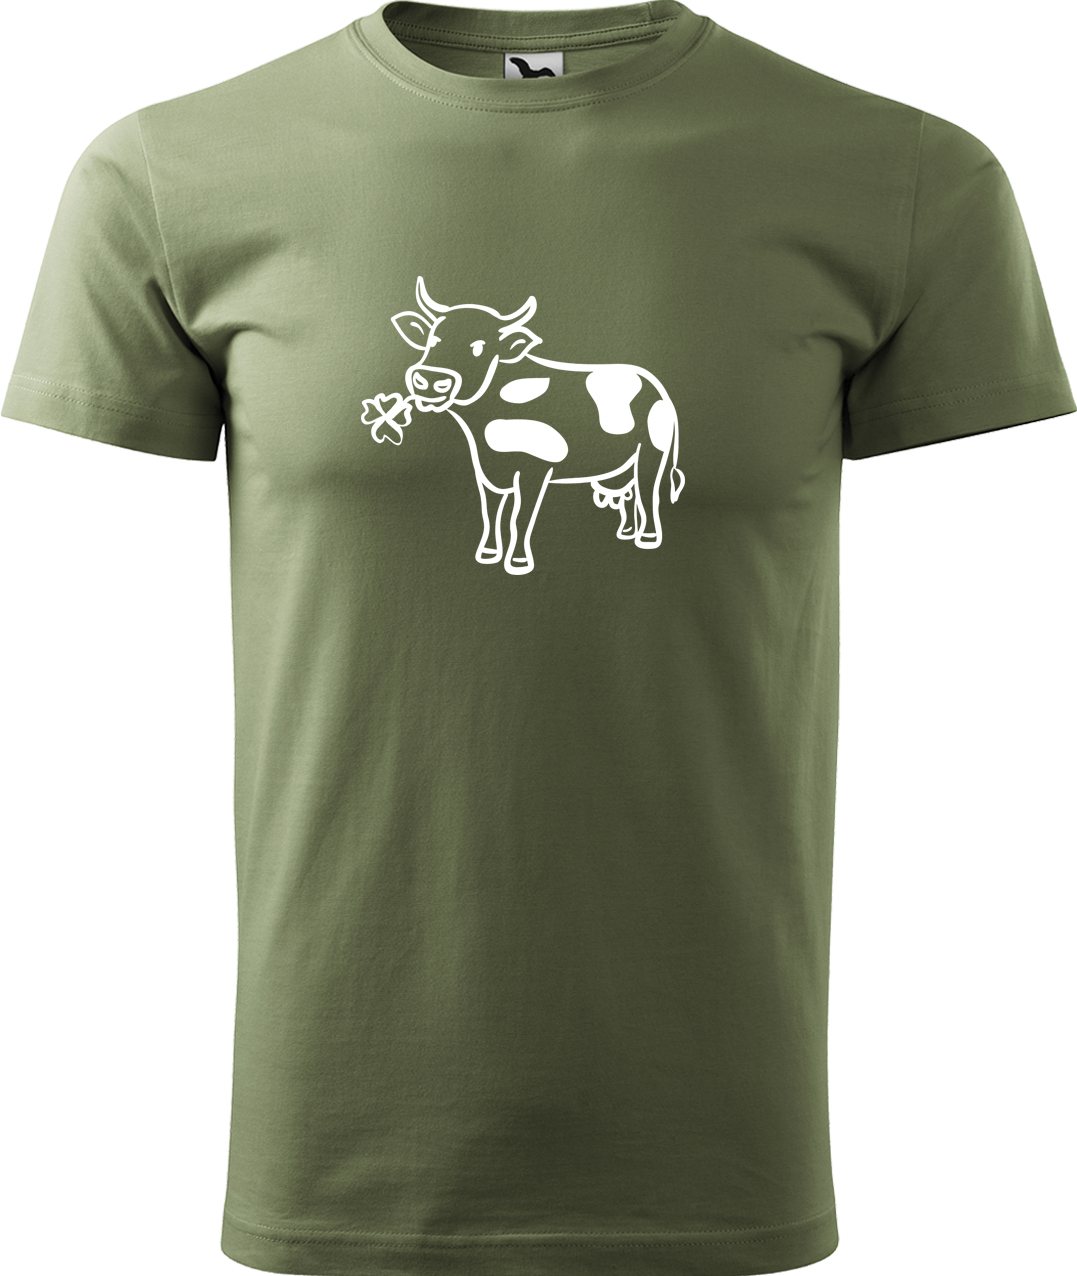 Pánské tričko s krávou - Kravička a jetel Velikost: XL, Barva: Světlá khaki (28), Střih: pánský